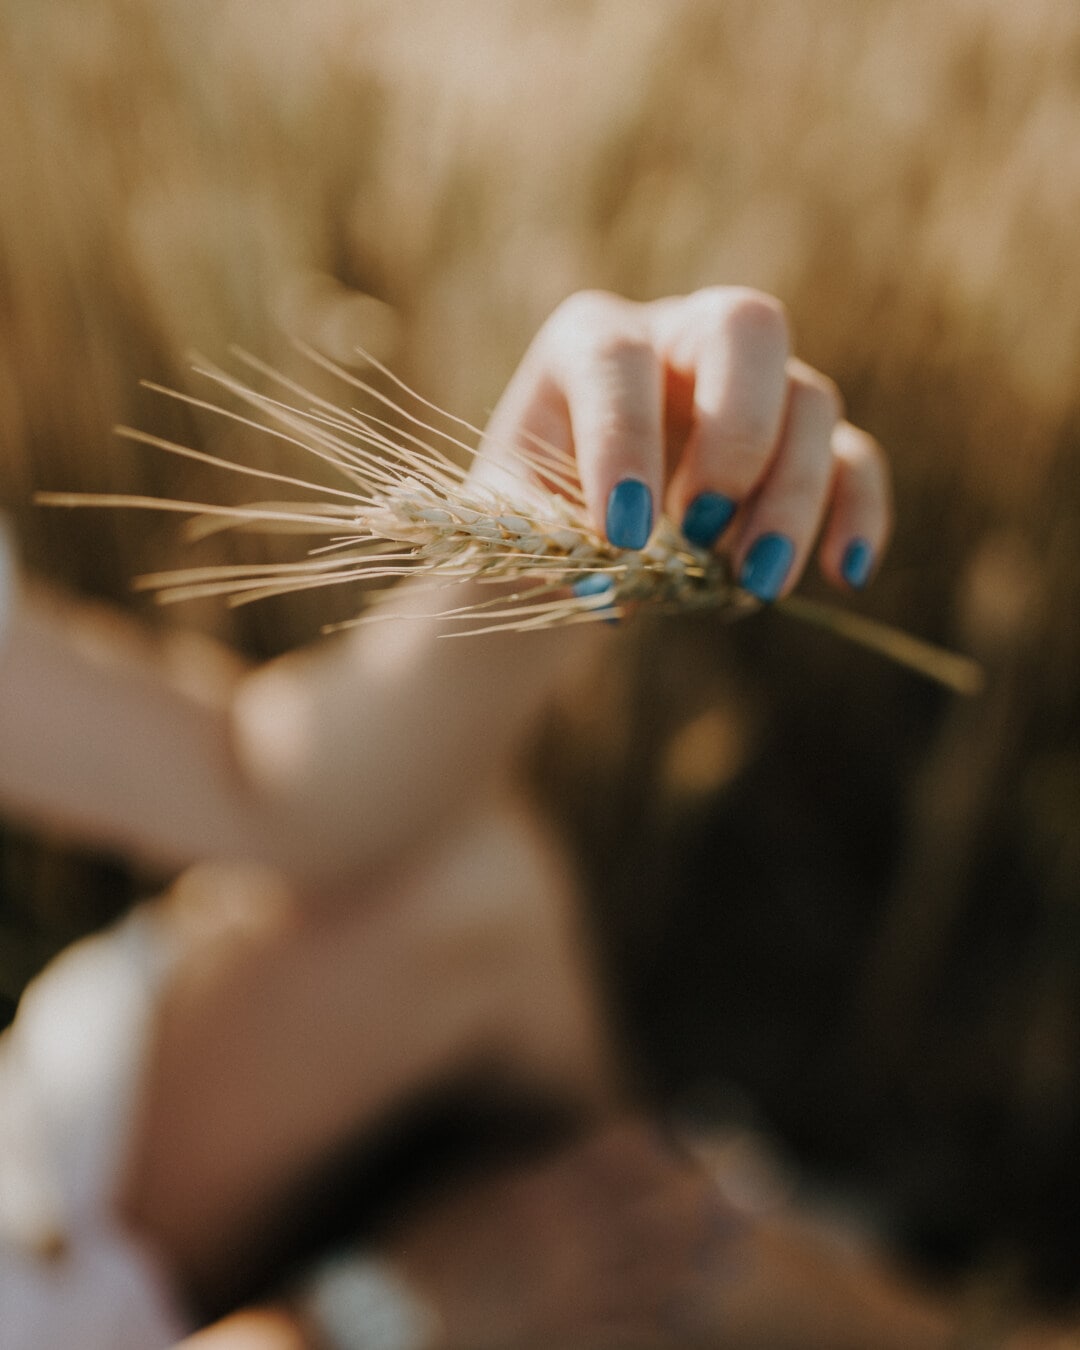 djevojka, ruka, pšenica, drži, prst, lak za nokte, žena, zamagliti, drvo, na otvorenom